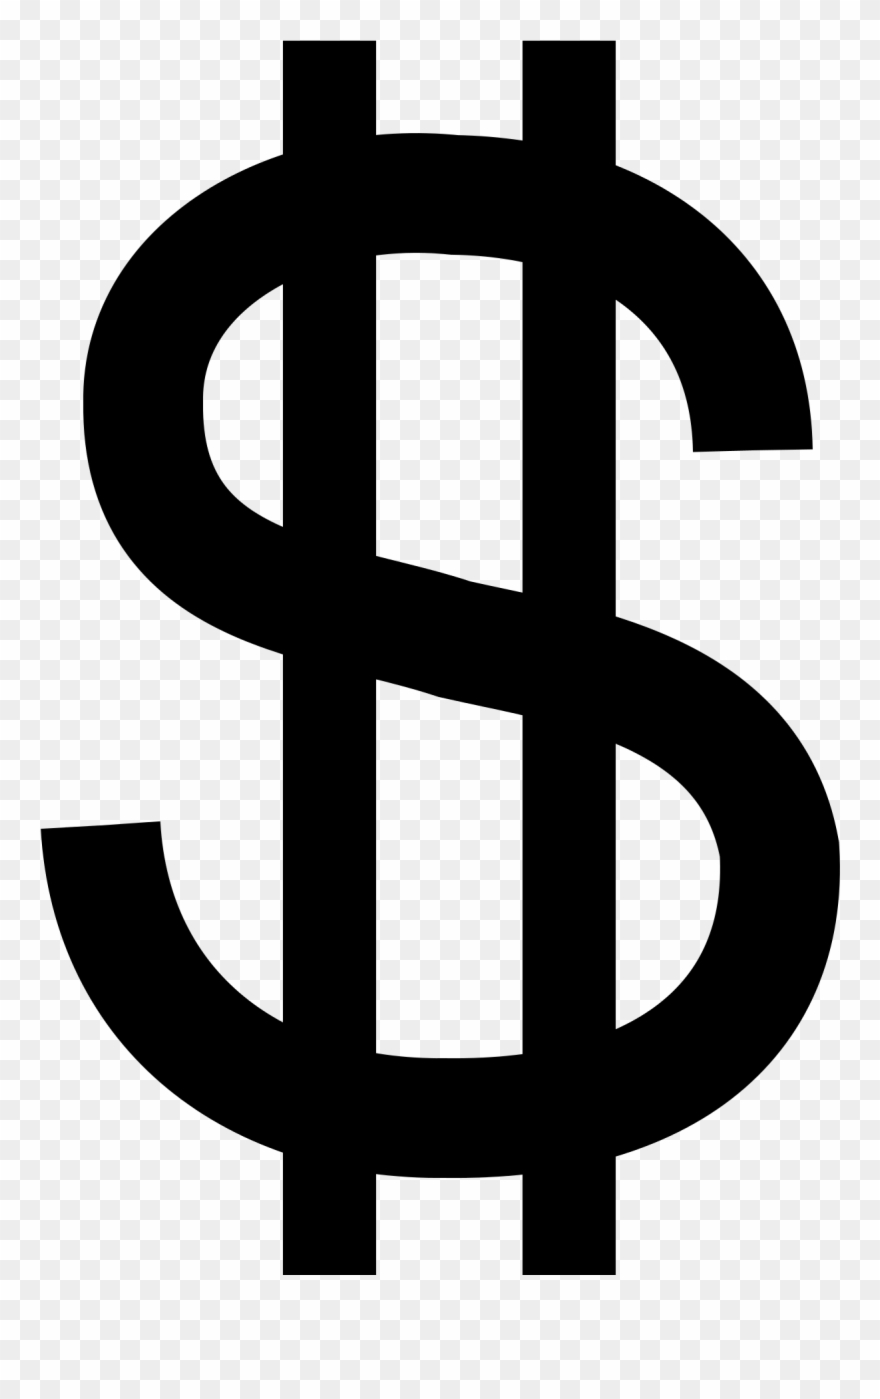 Images For Dollar Sign Black Clip Art